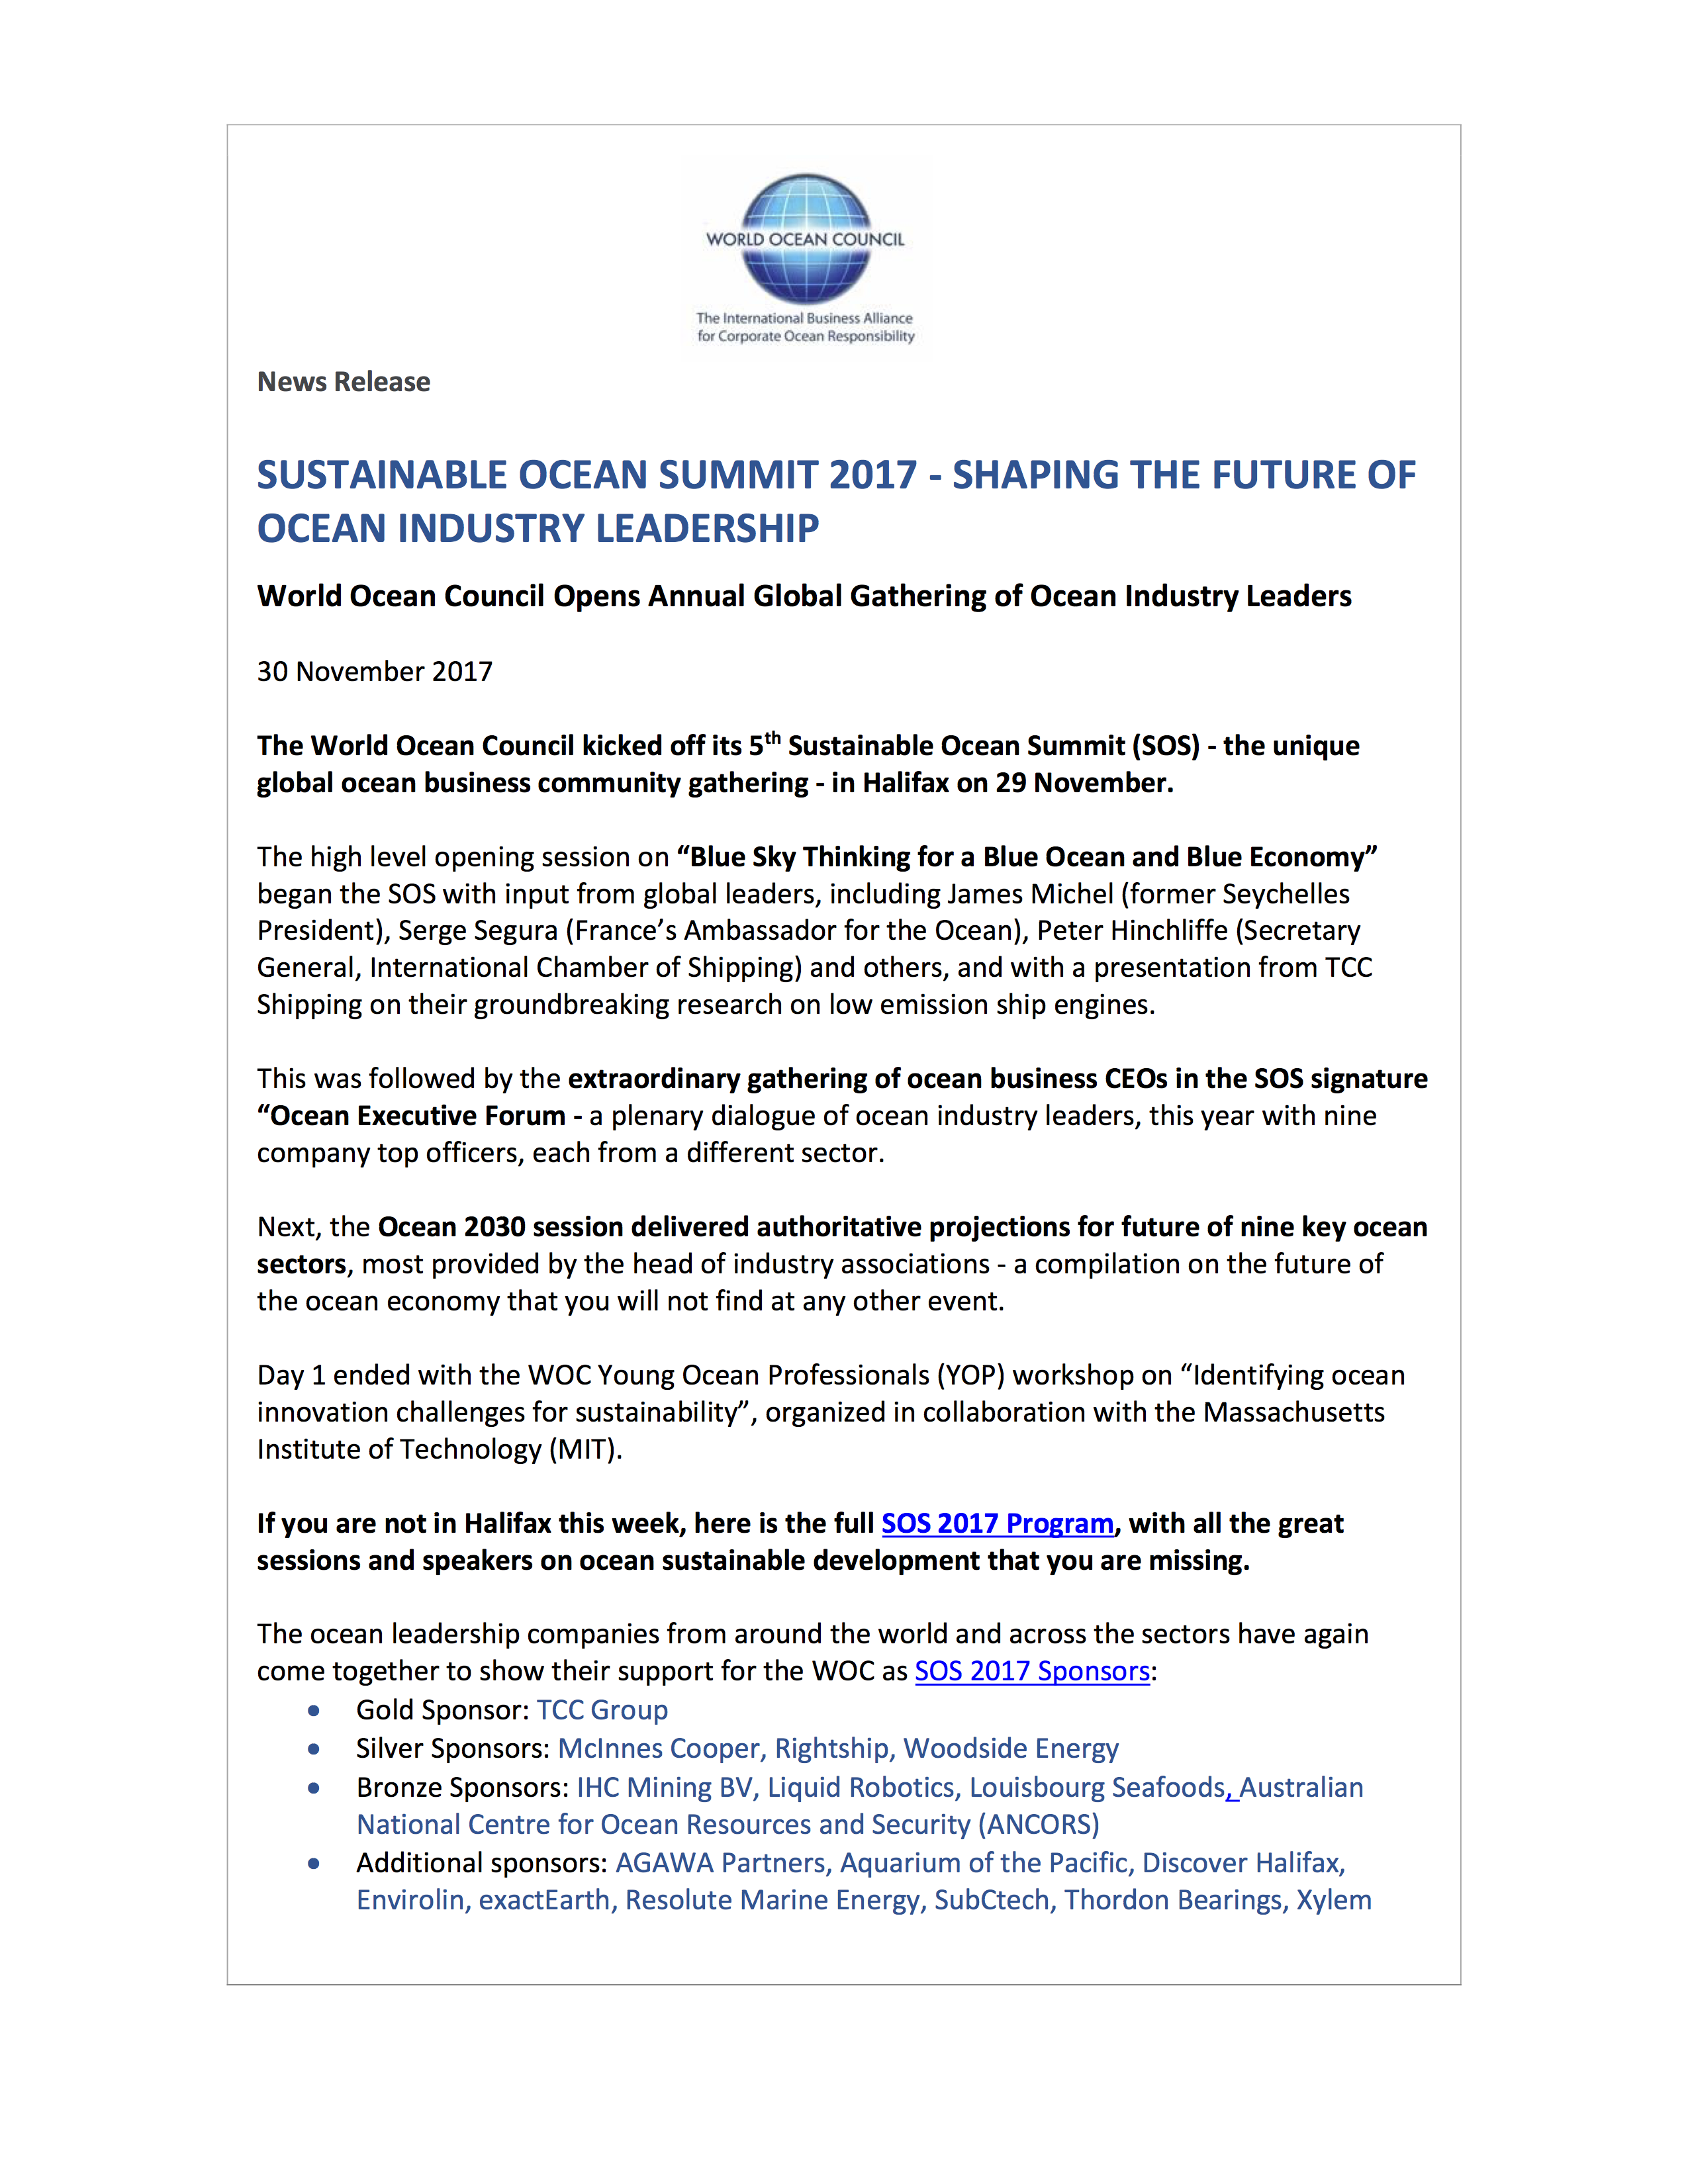 Sustainable Ocean Summit - Ocean Industry Leaders Meet in Halifax